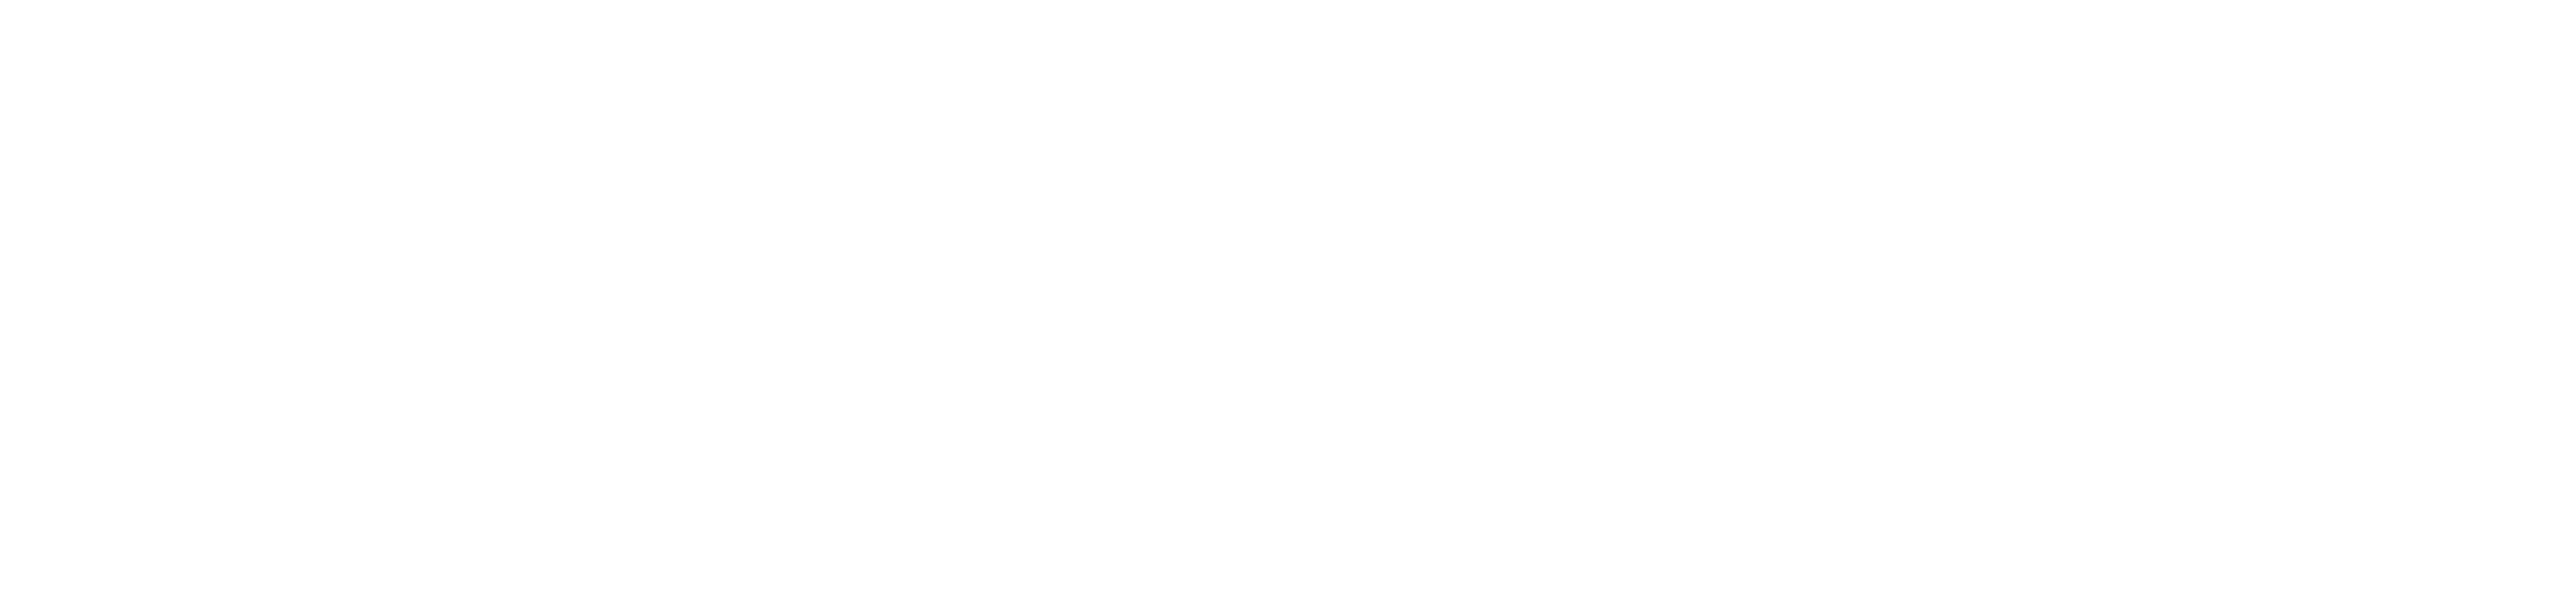 SnapDragon client Sleepytie logo